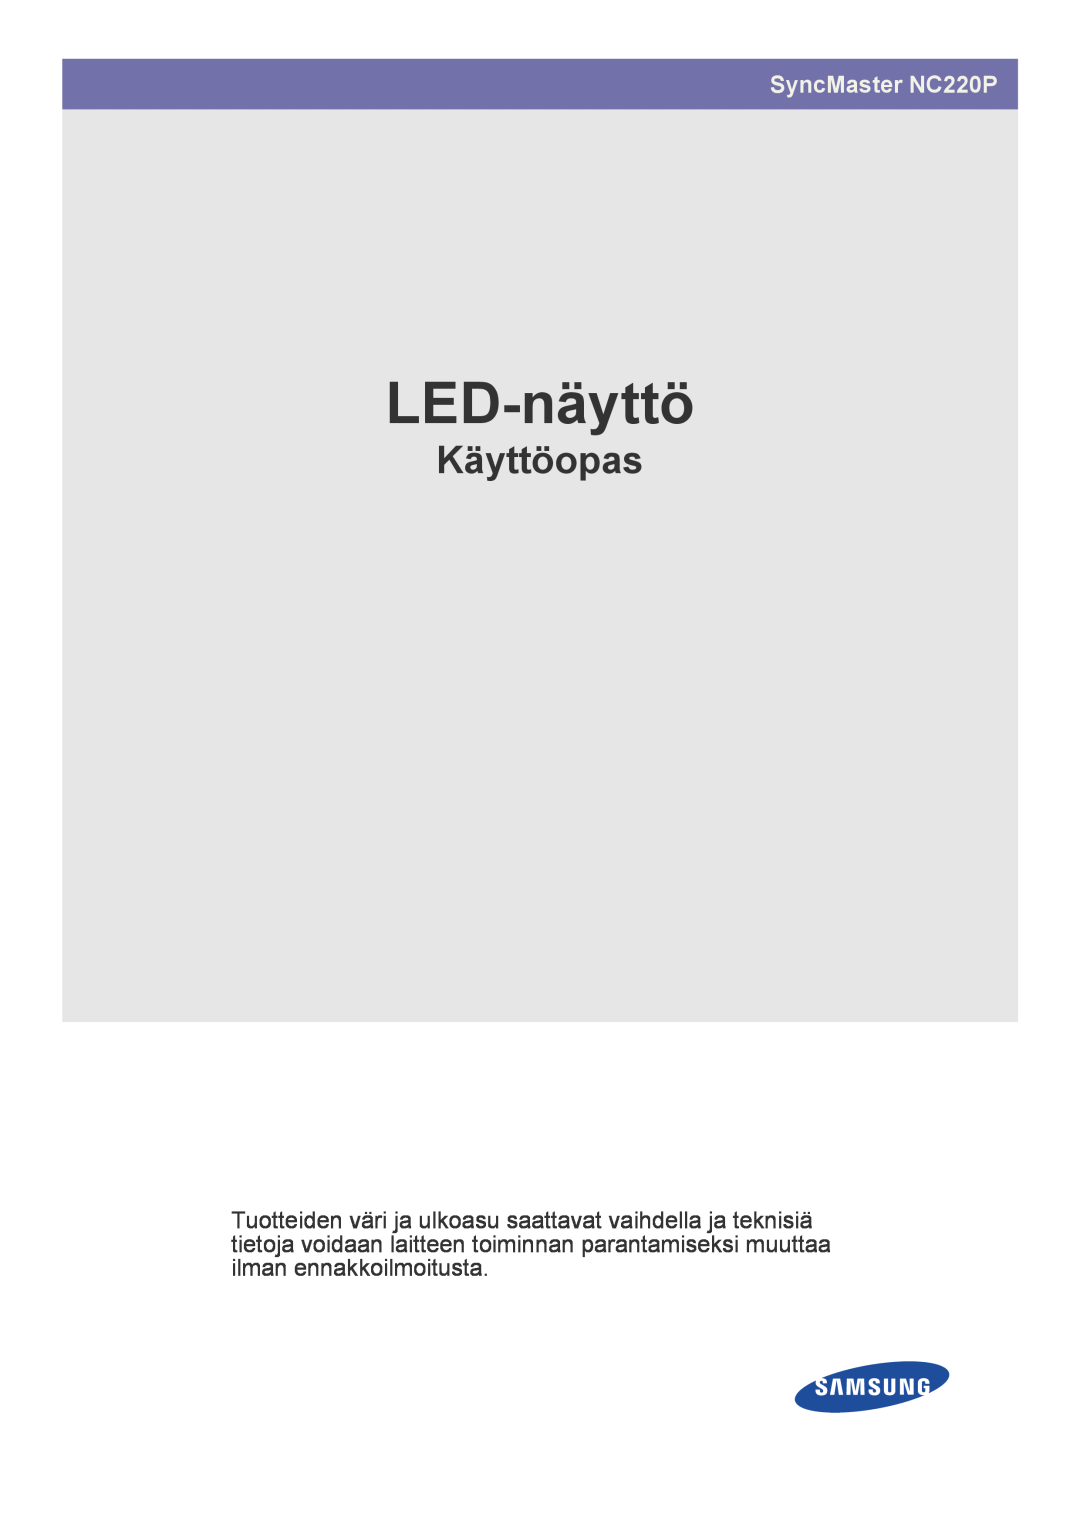 Samsung LF22NPBHBNP/EN manual LED-näyttö, Käyttöopas, SyncMaster NC220P 